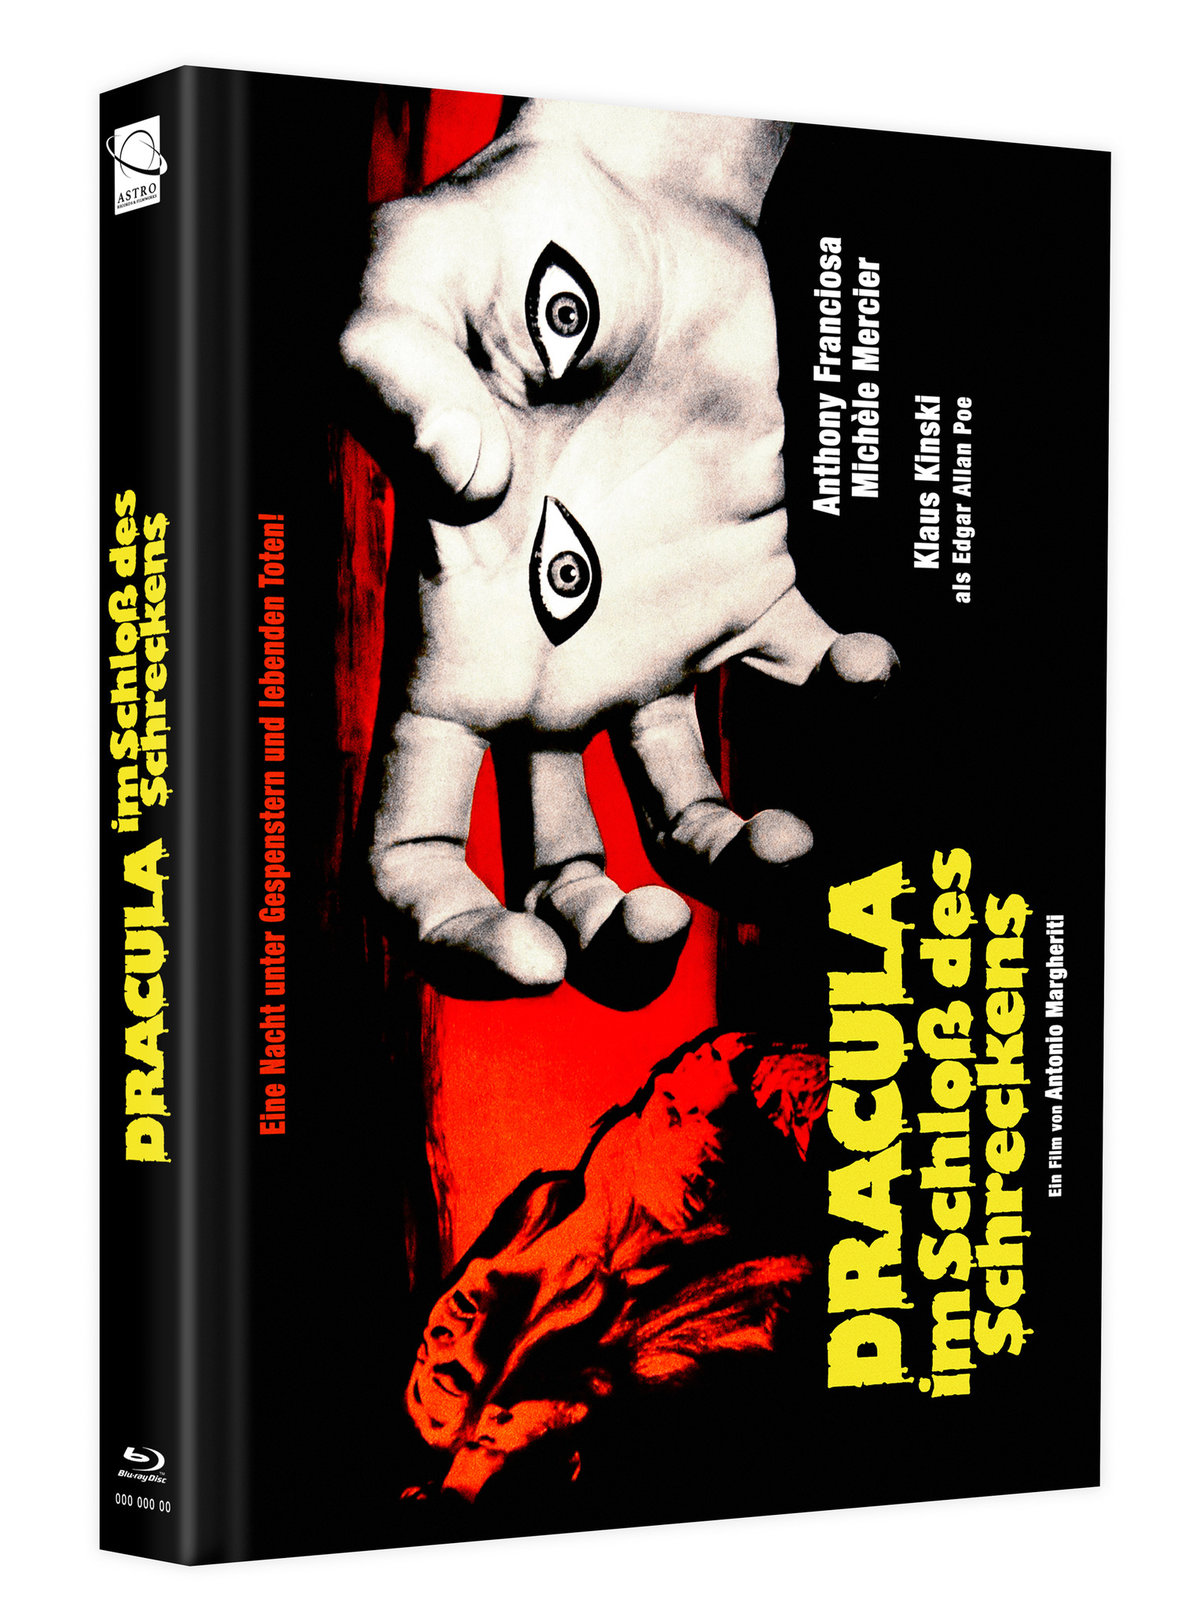 Dracula im Schloss Schreckens des Blu-ray